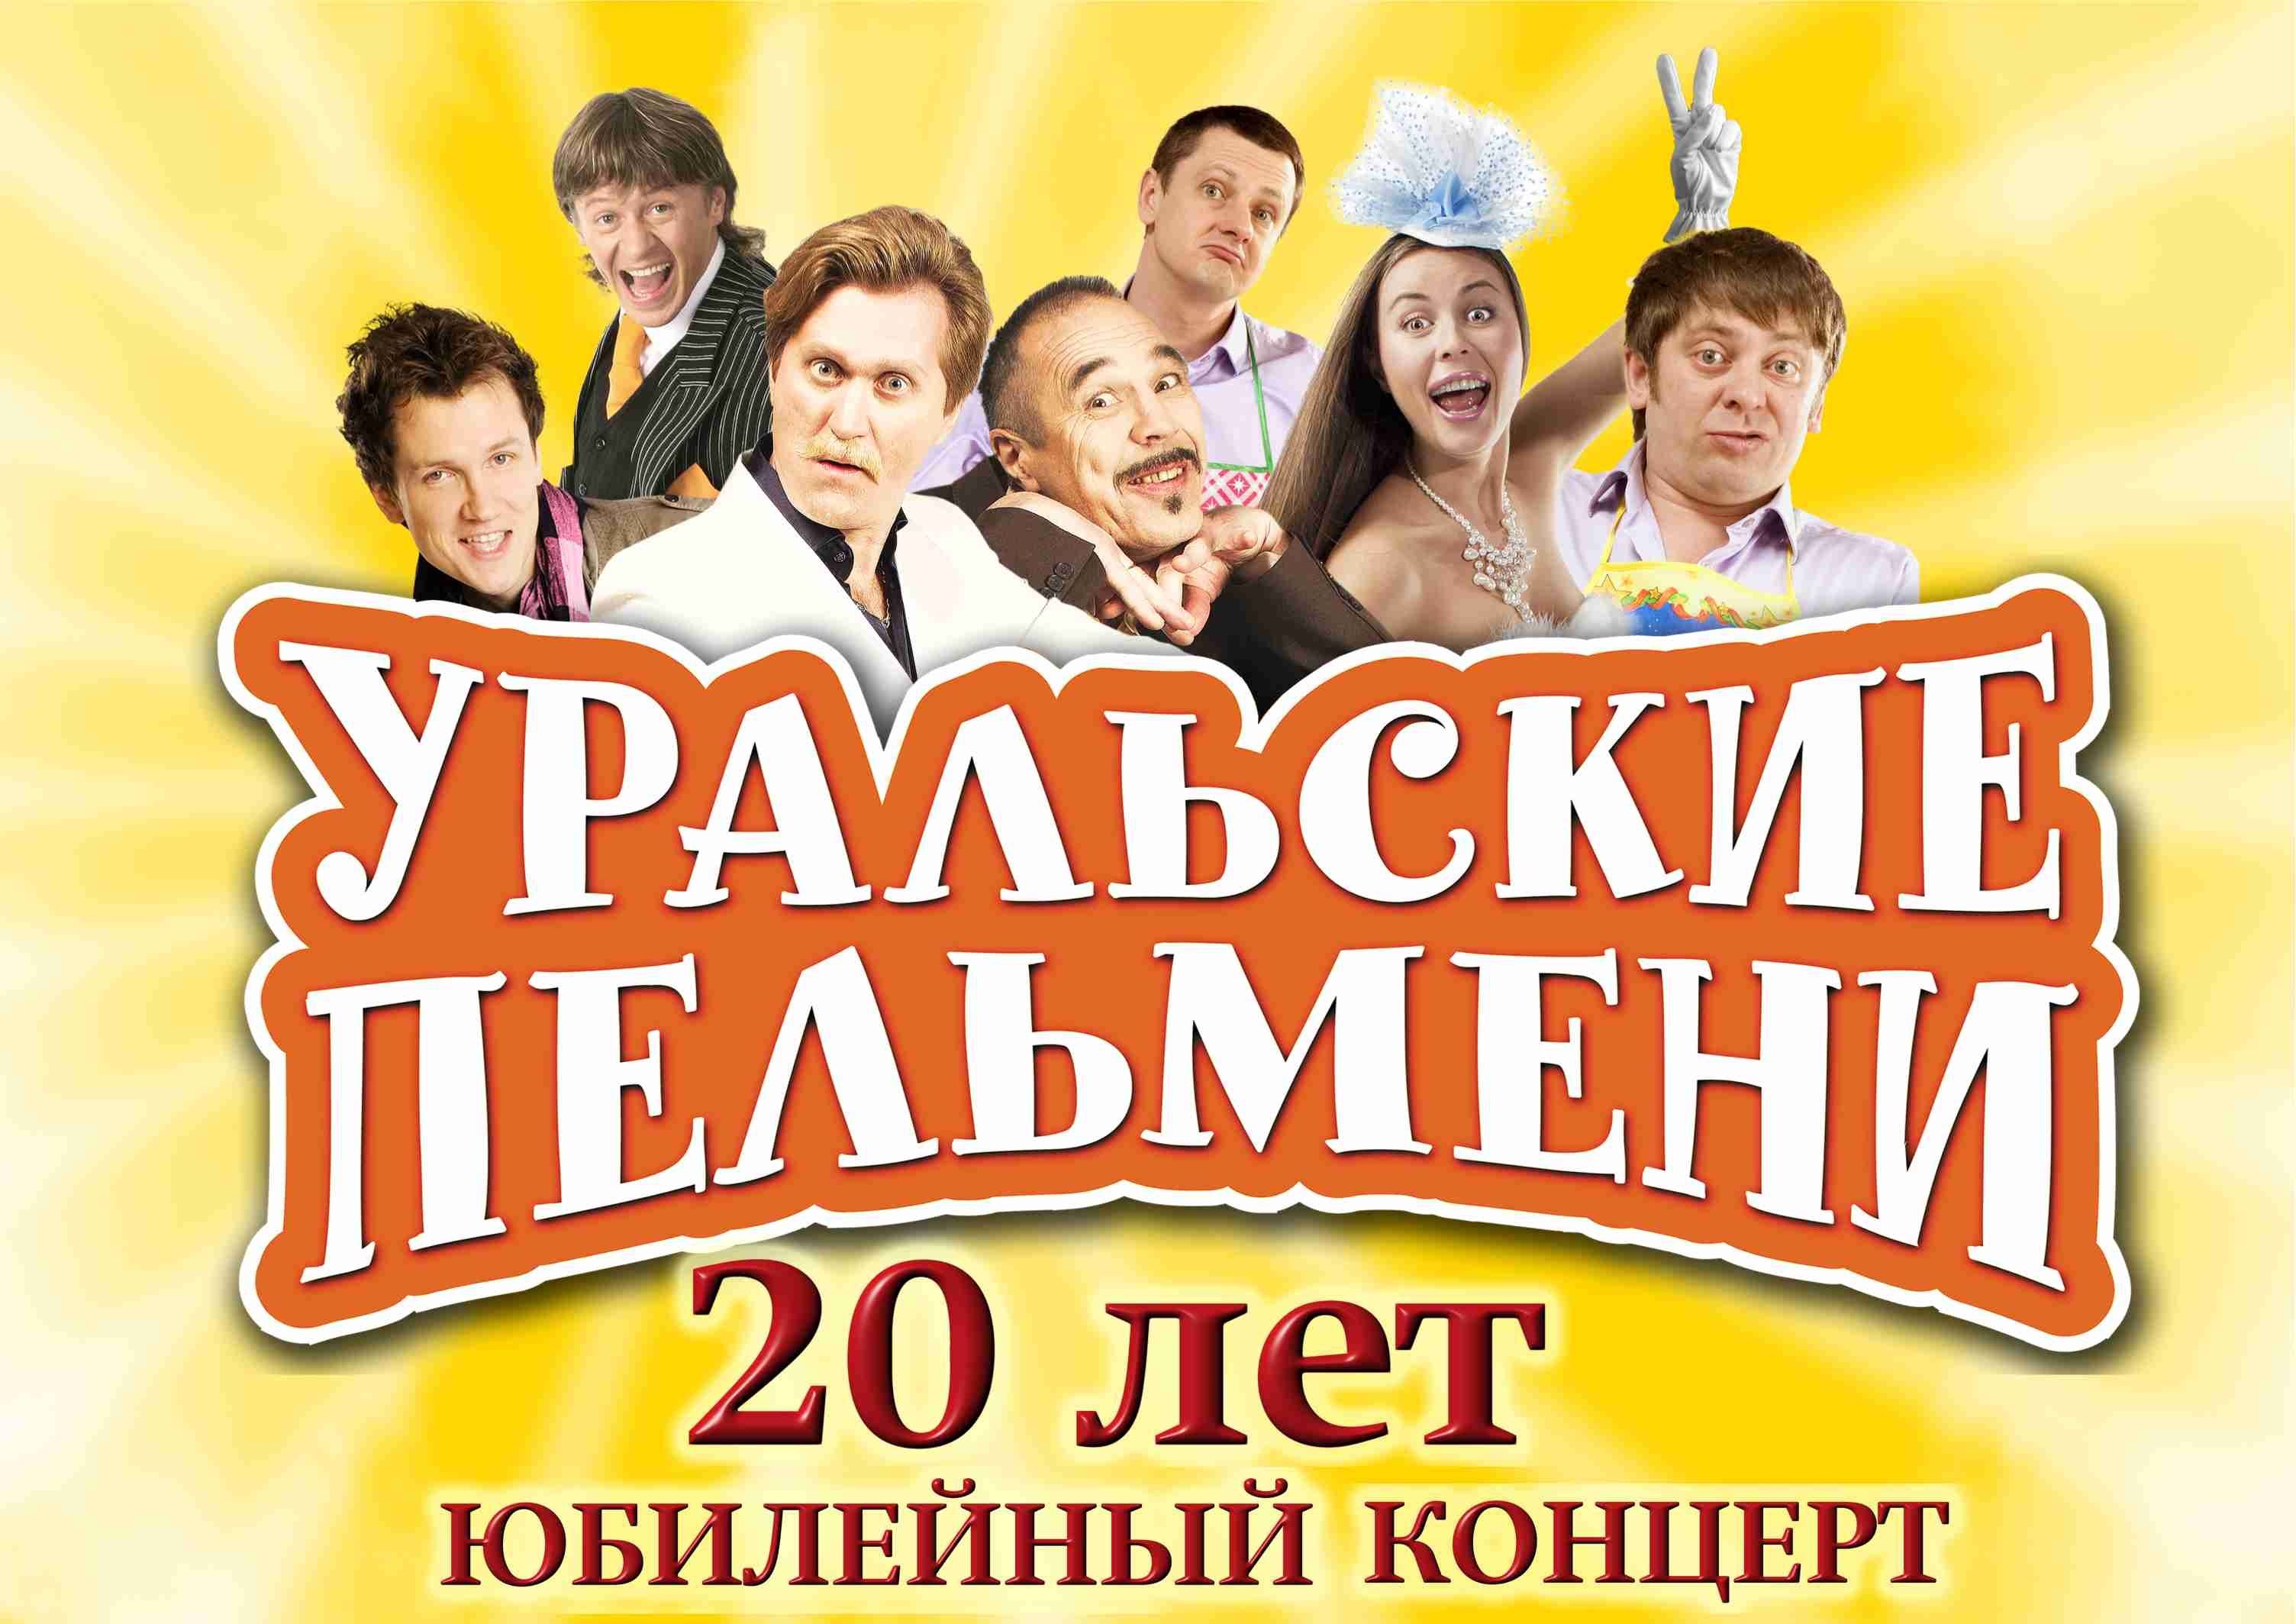 Шоу Уральские пельмени логотип